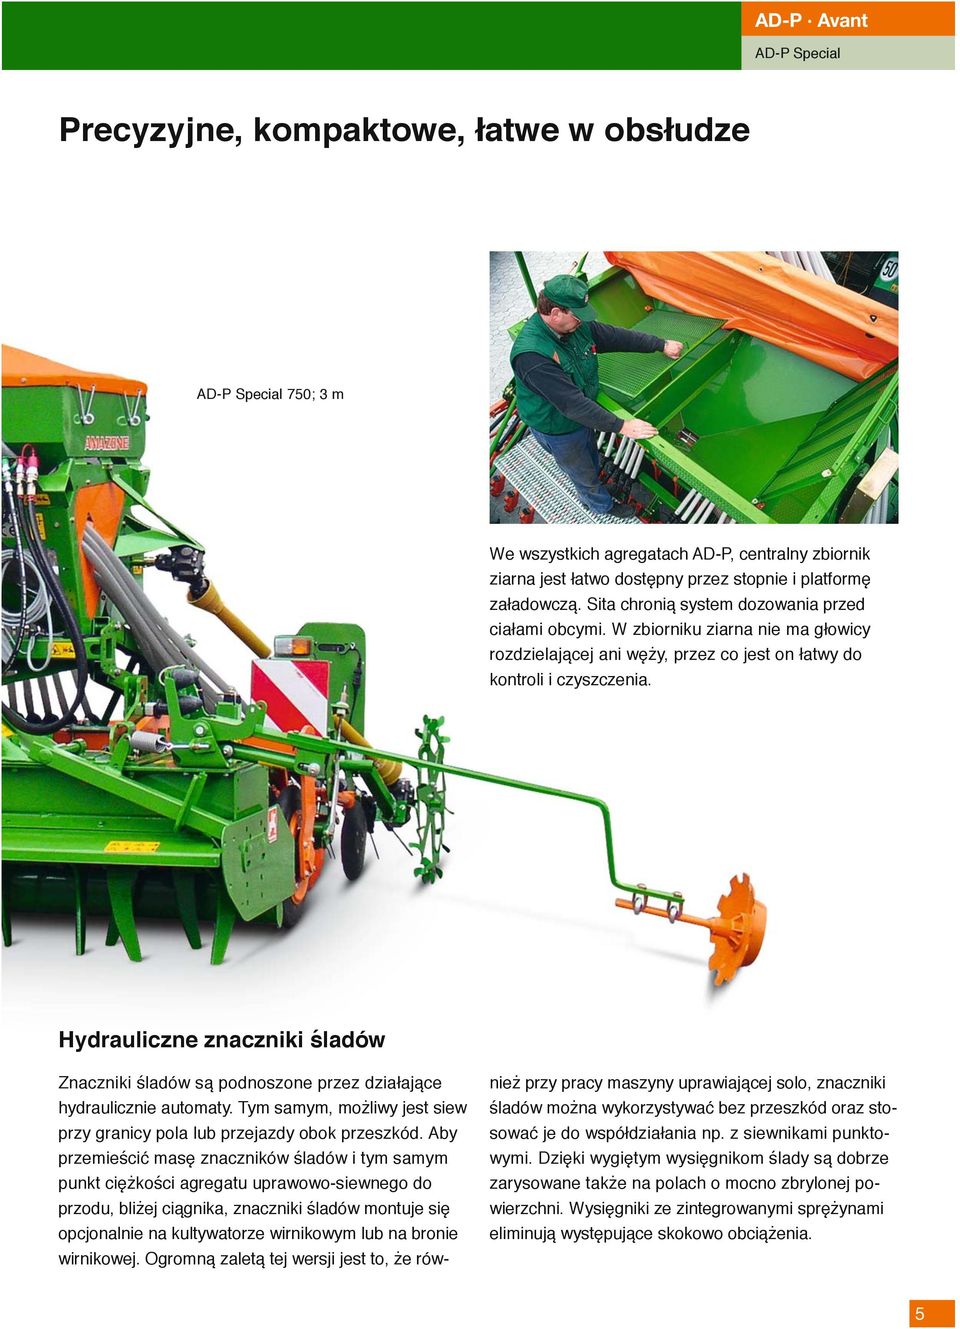 Hydrauliczne znaczniki śladów Znaczniki śladów są podnoszone przez działające hydraulicznie automaty. Tym samym, możliwy jest siew przy granicy pola lub przejazdy obok przeszkód.